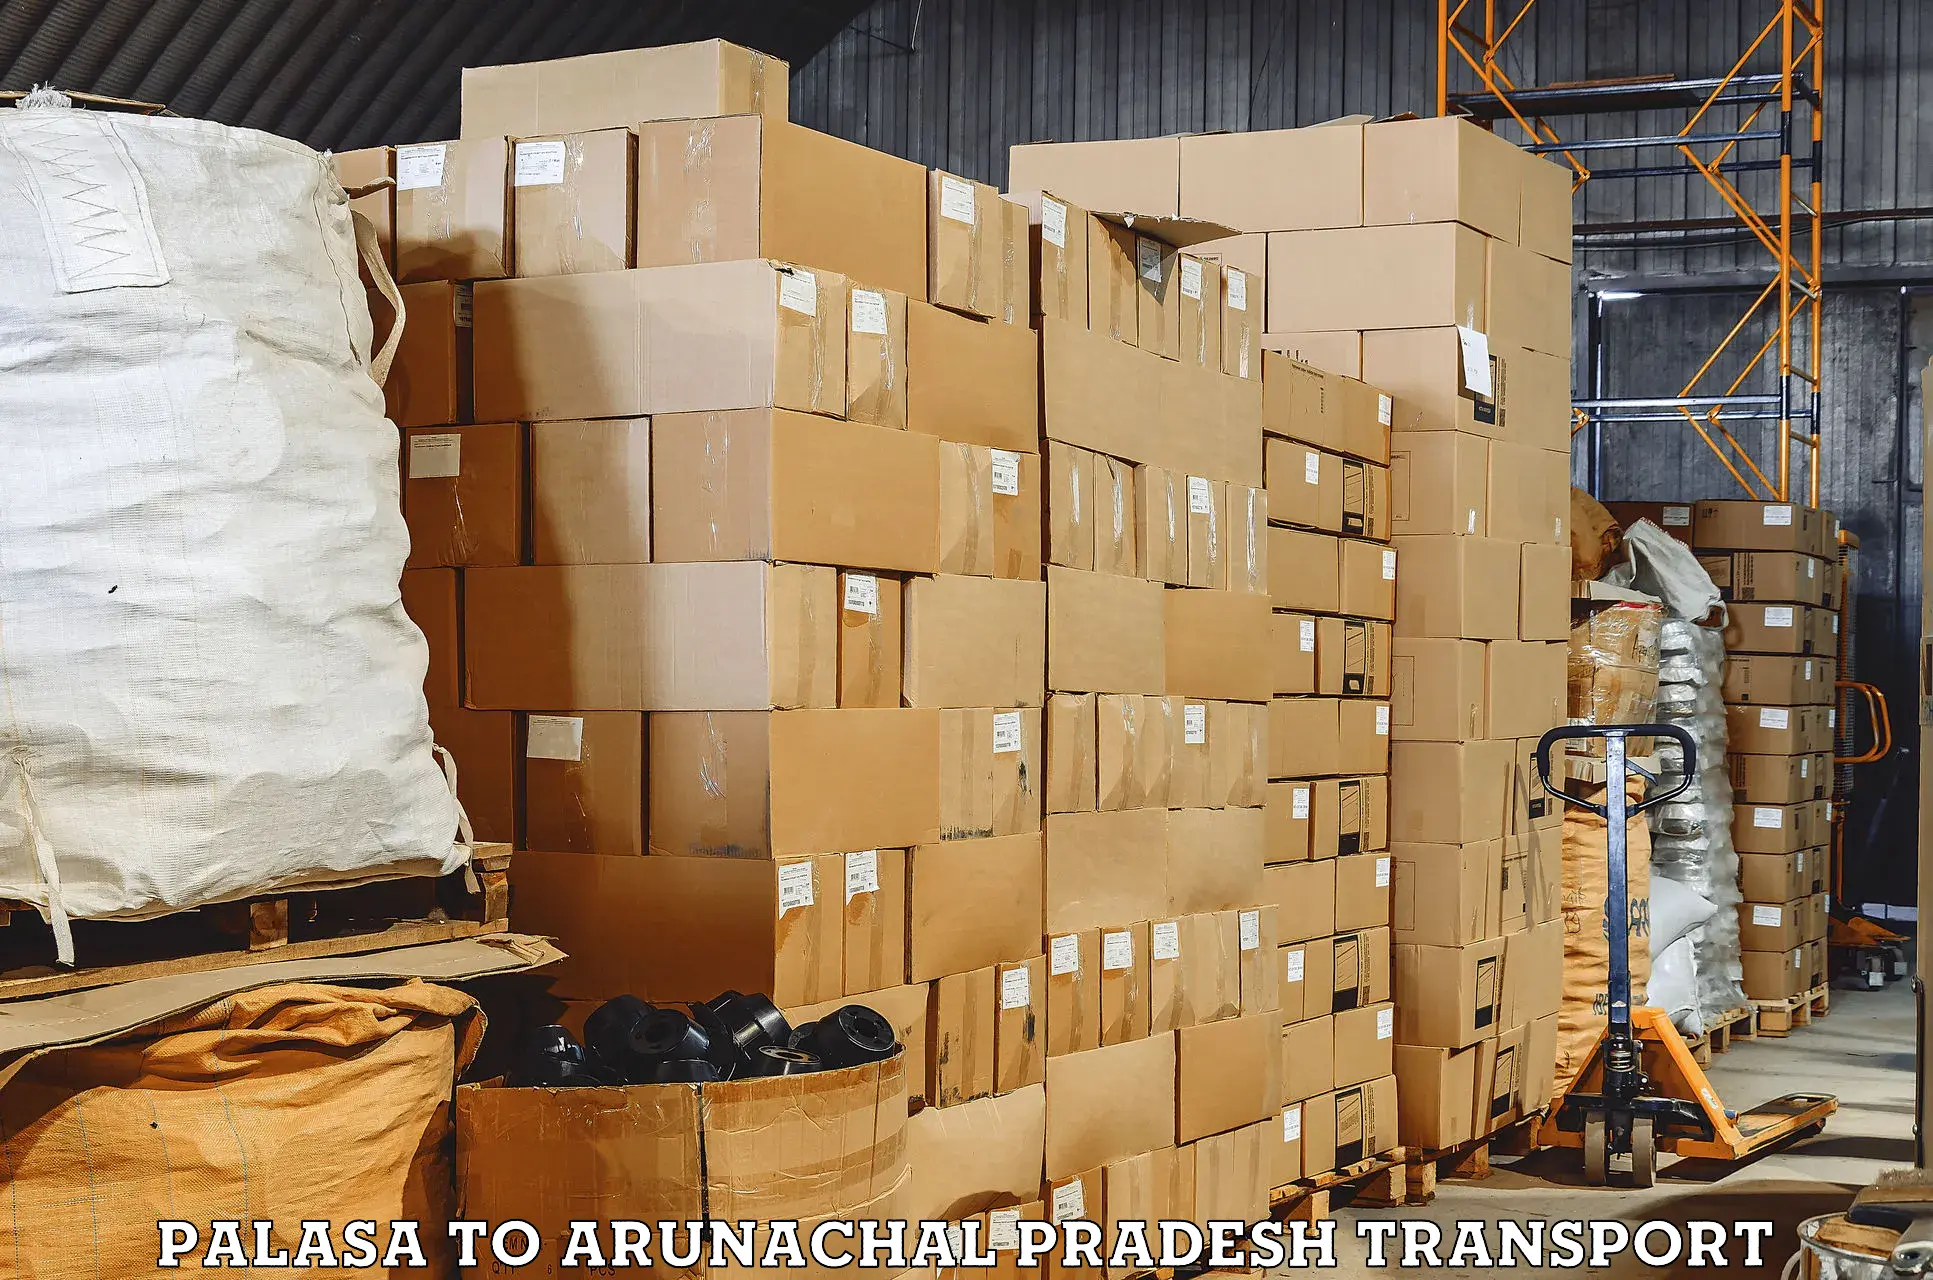 Furniture transport service Palasa to Arunachal Pradesh